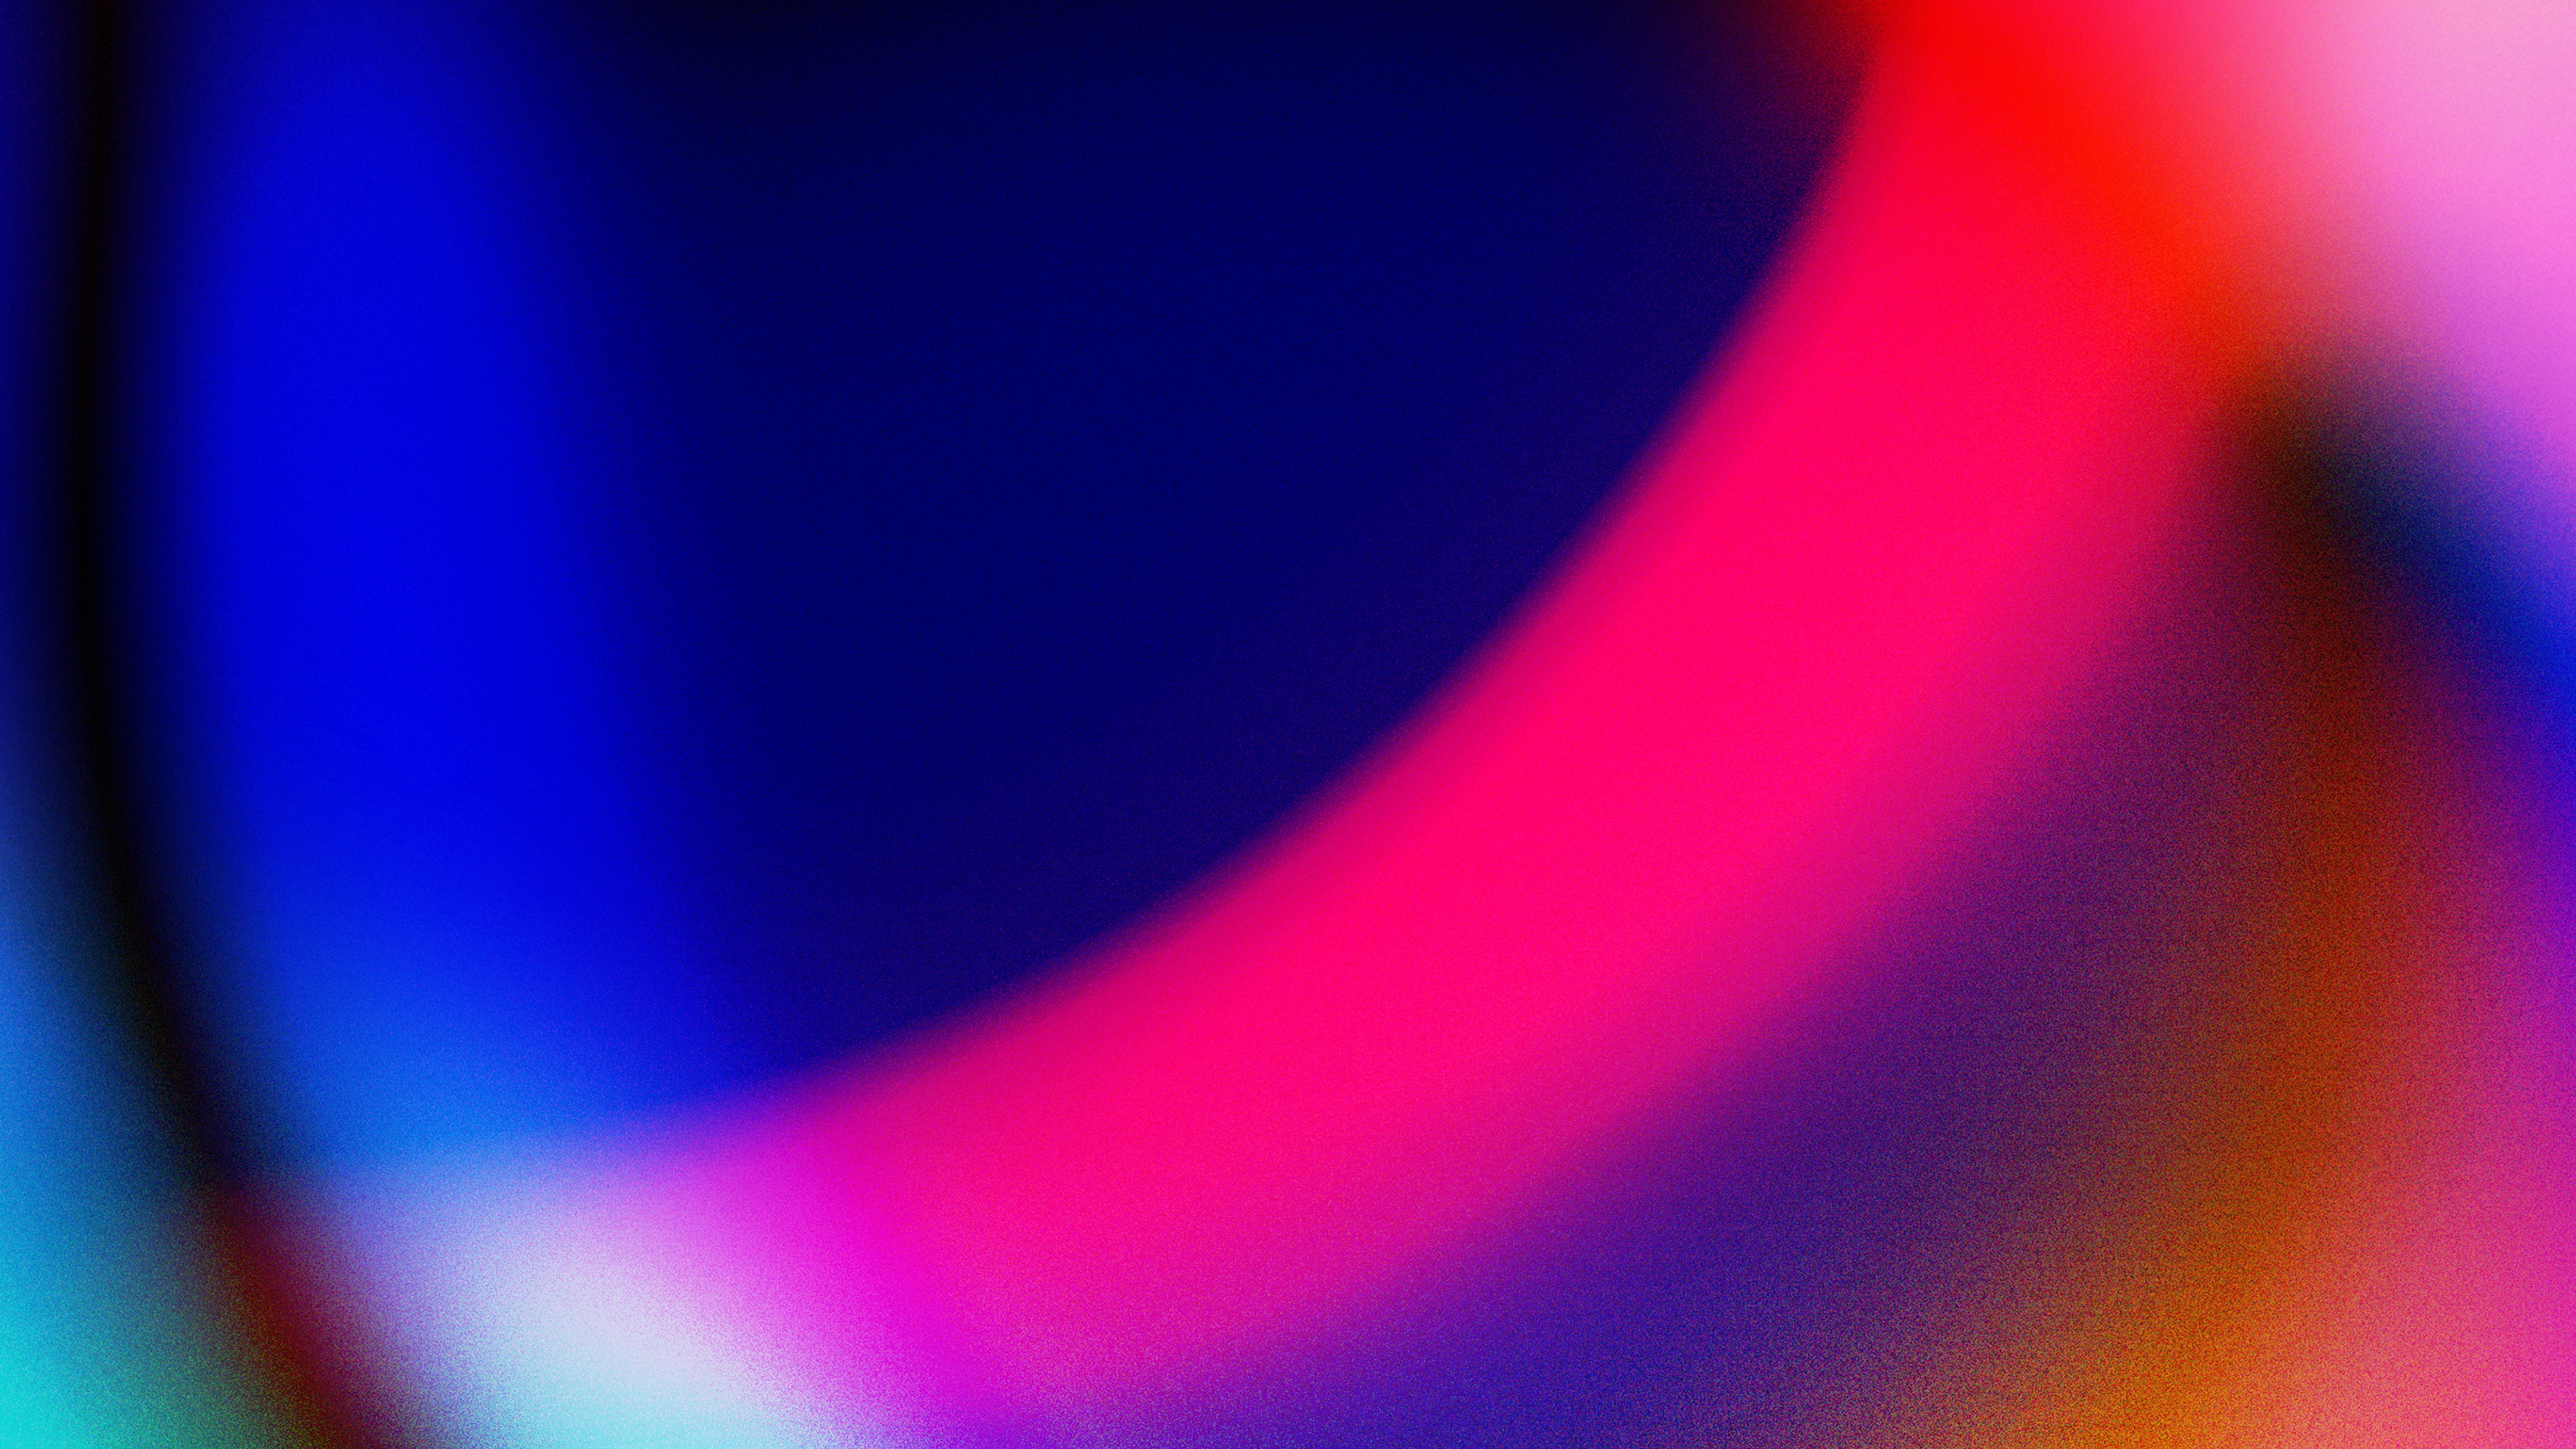 desenfoque de fondo de pantalla,azul,rojo,púrpura,violeta,ligero